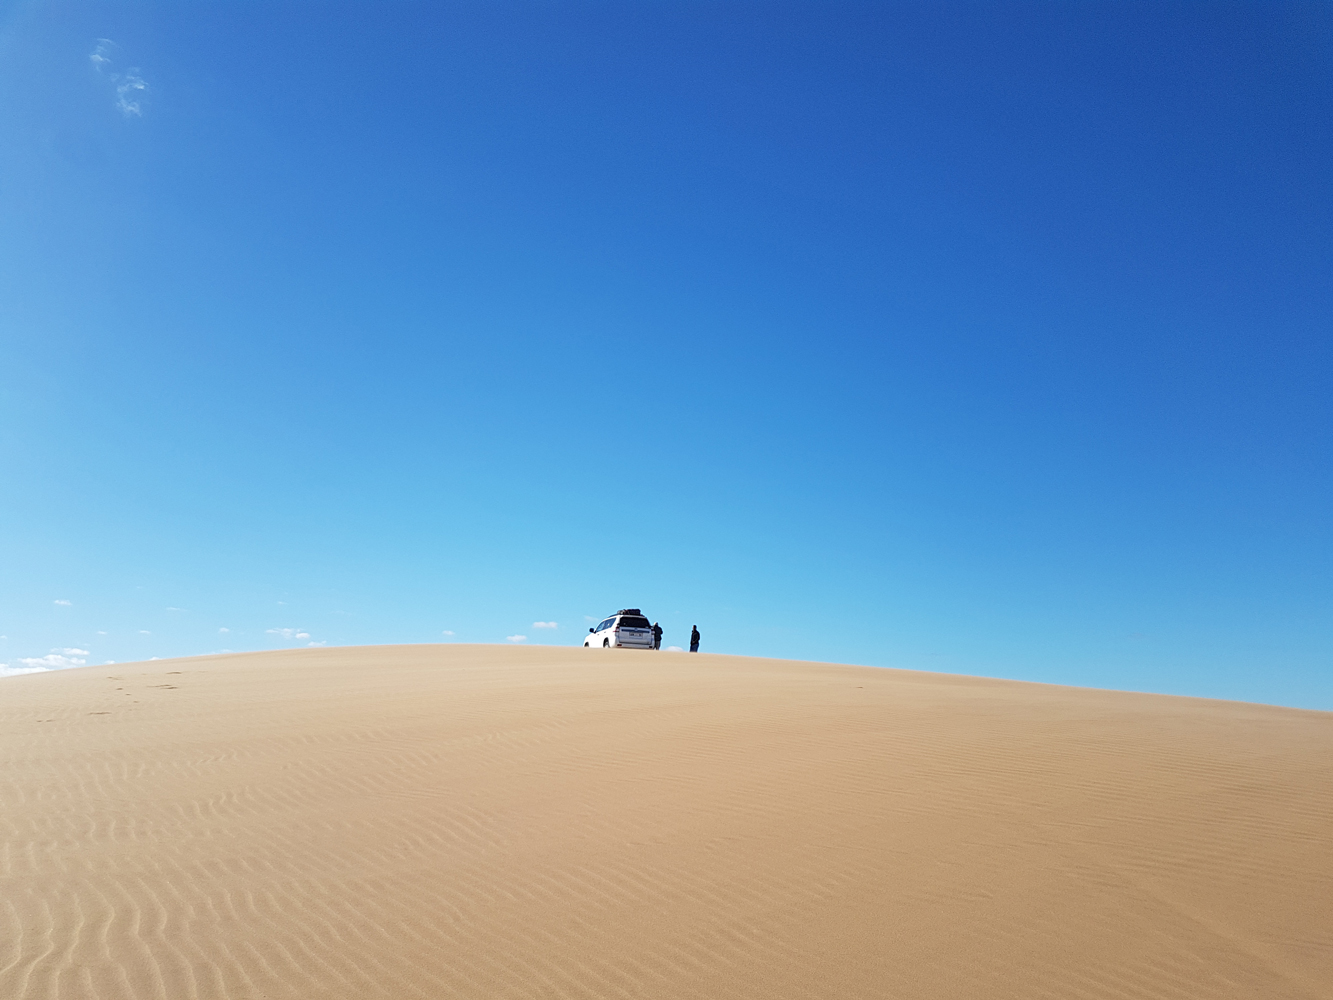 Desert espace,night in desert,3 days from marrakech to desert